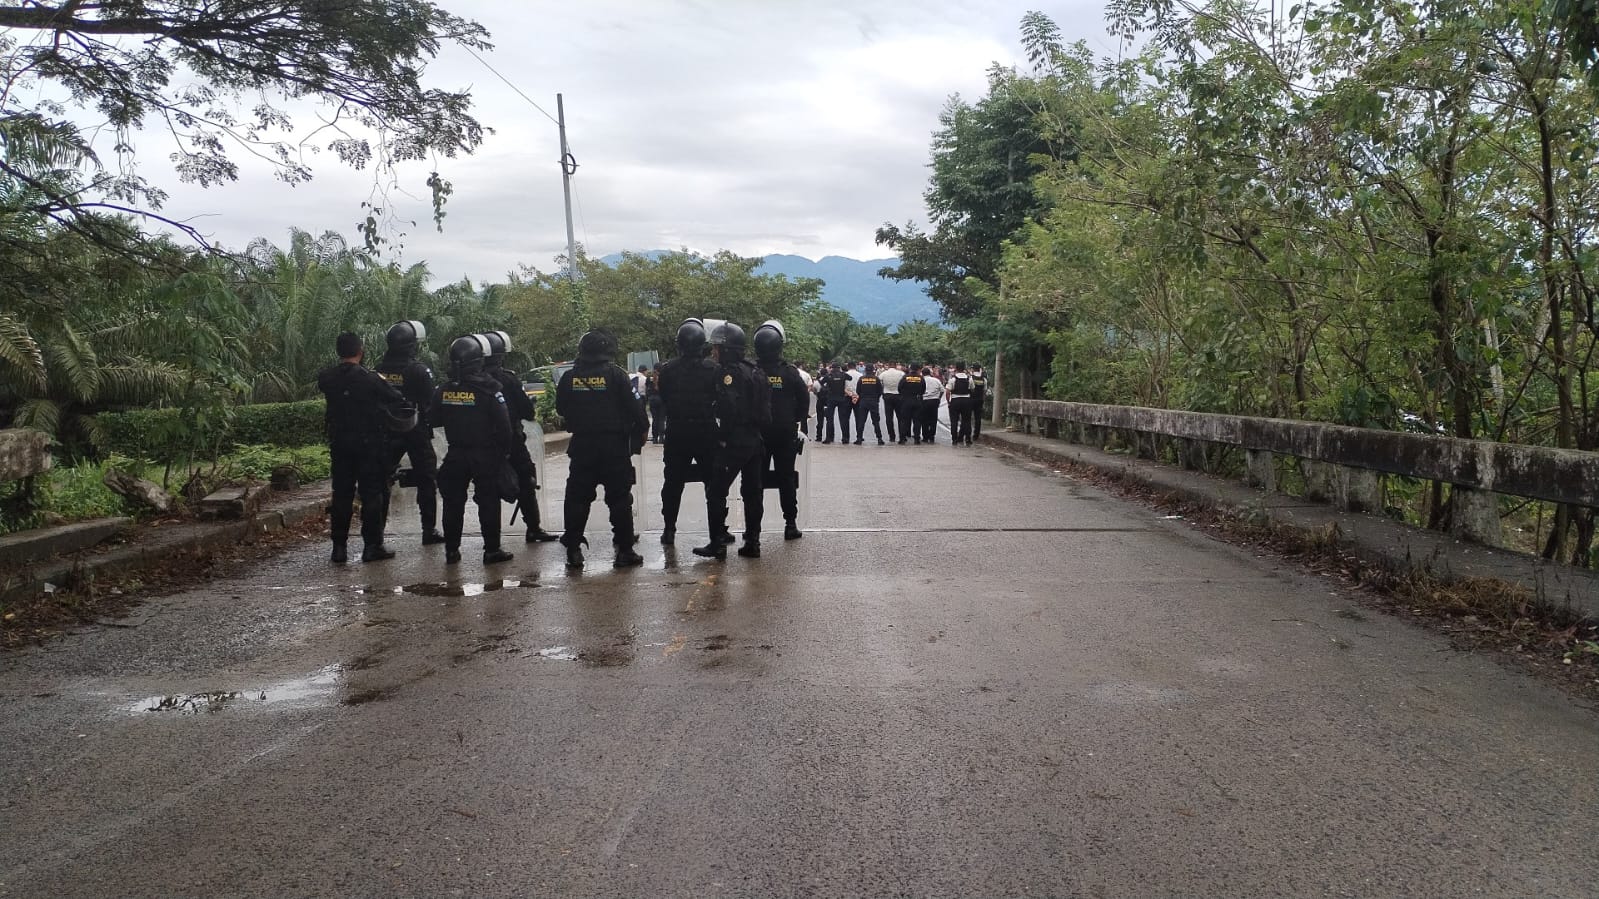 La caravana se disolvió a su paso por Guatemala, donde fue bloqueada por las autoridades migratorias locales.